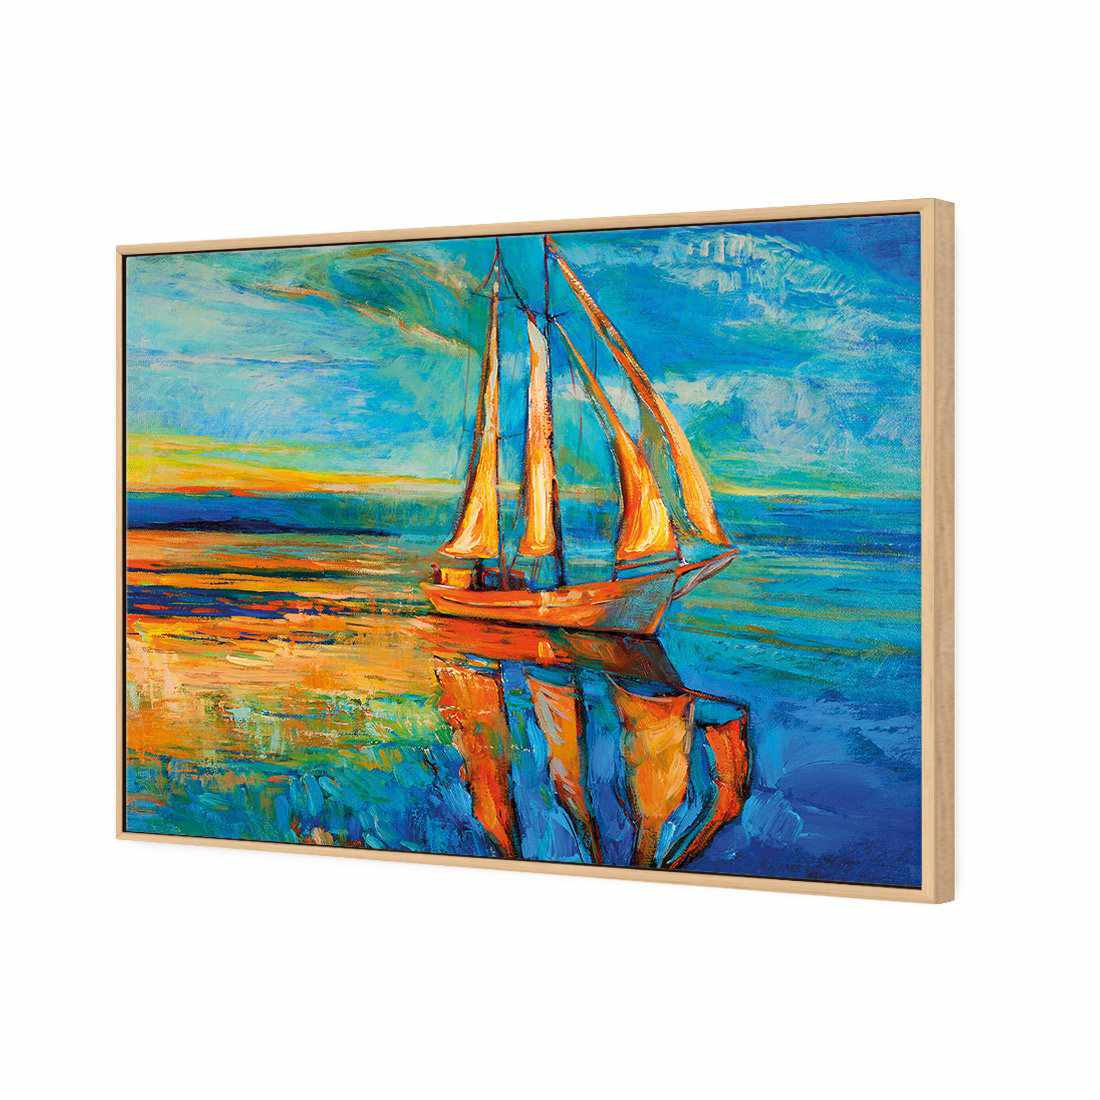 Sailing Boat Reflected Canvas Art-Canvas-Wall Art Designs-45x30cm-Canvas - Oak Frame-Wall Art Designs